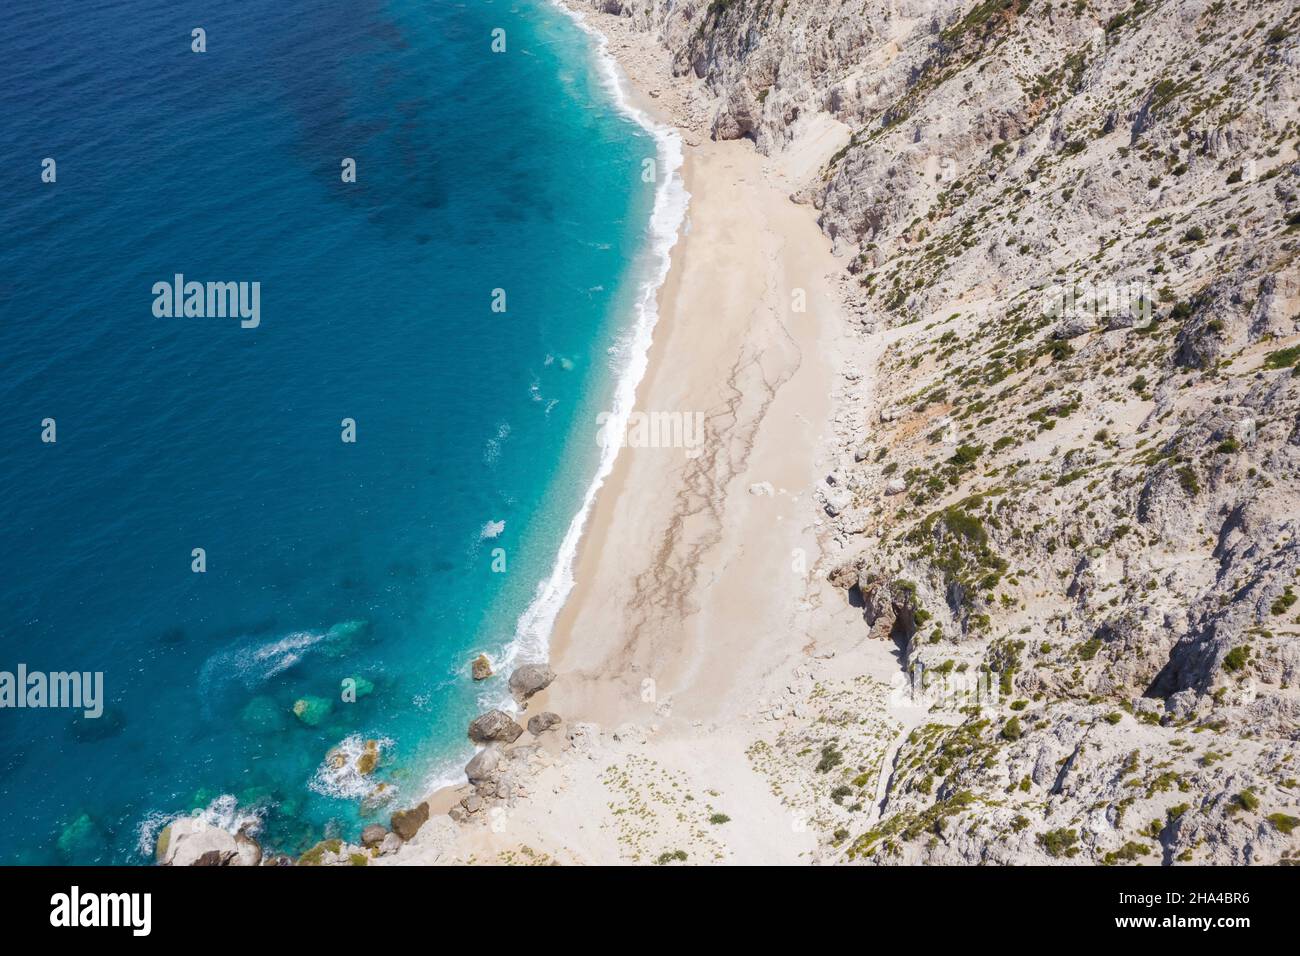 la célèbre plage de platia ammos dans l'île de kefalonia, en grèce. la plage a été touchée par le tremblement de terre au printemps 2014 et il est très difficile de descendre sur la plage. Banque D'Images